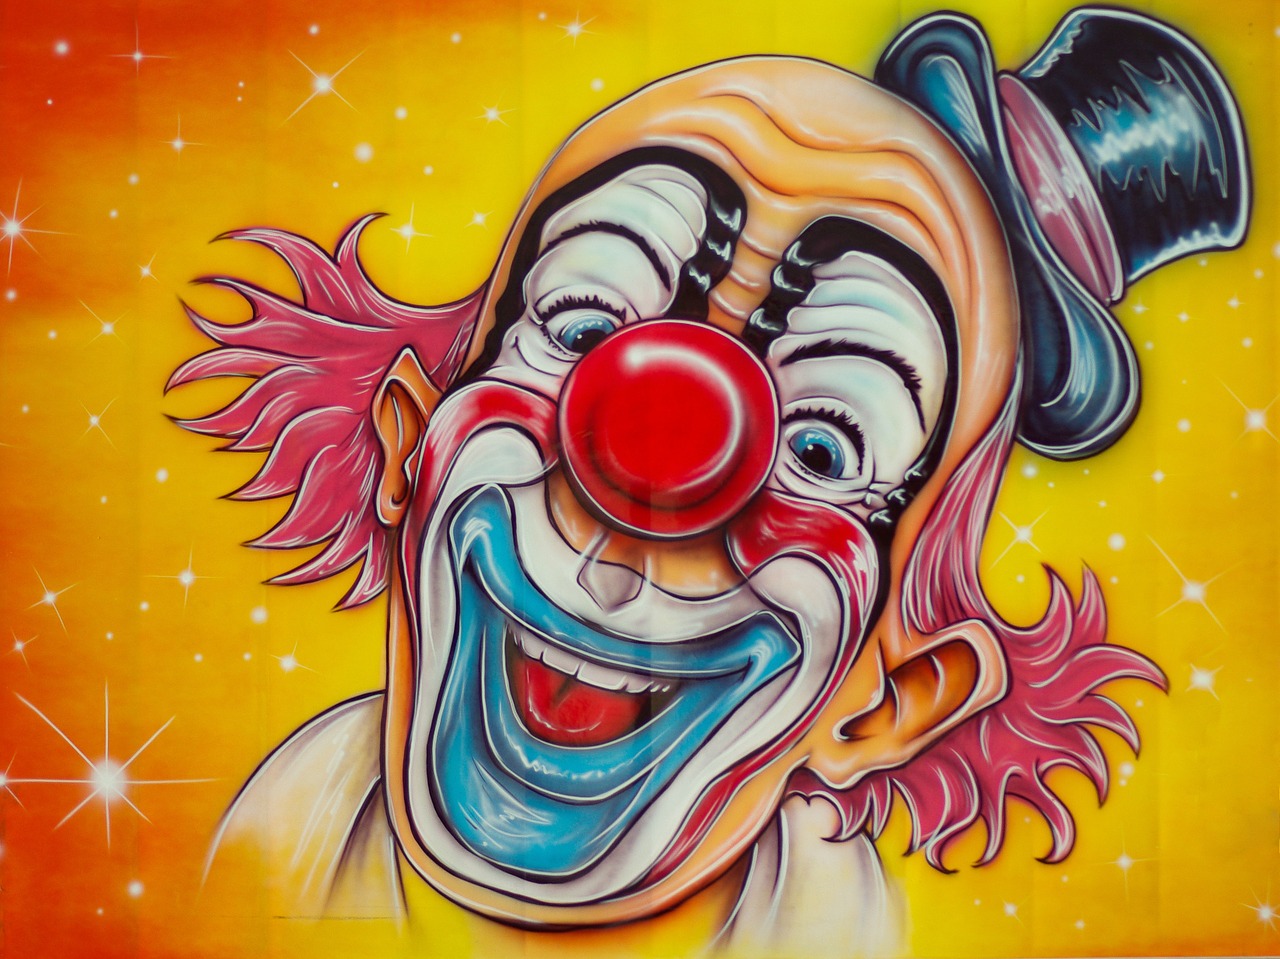 Free Image by pixabay.com circus-clown-disguise-fun-fair-653851